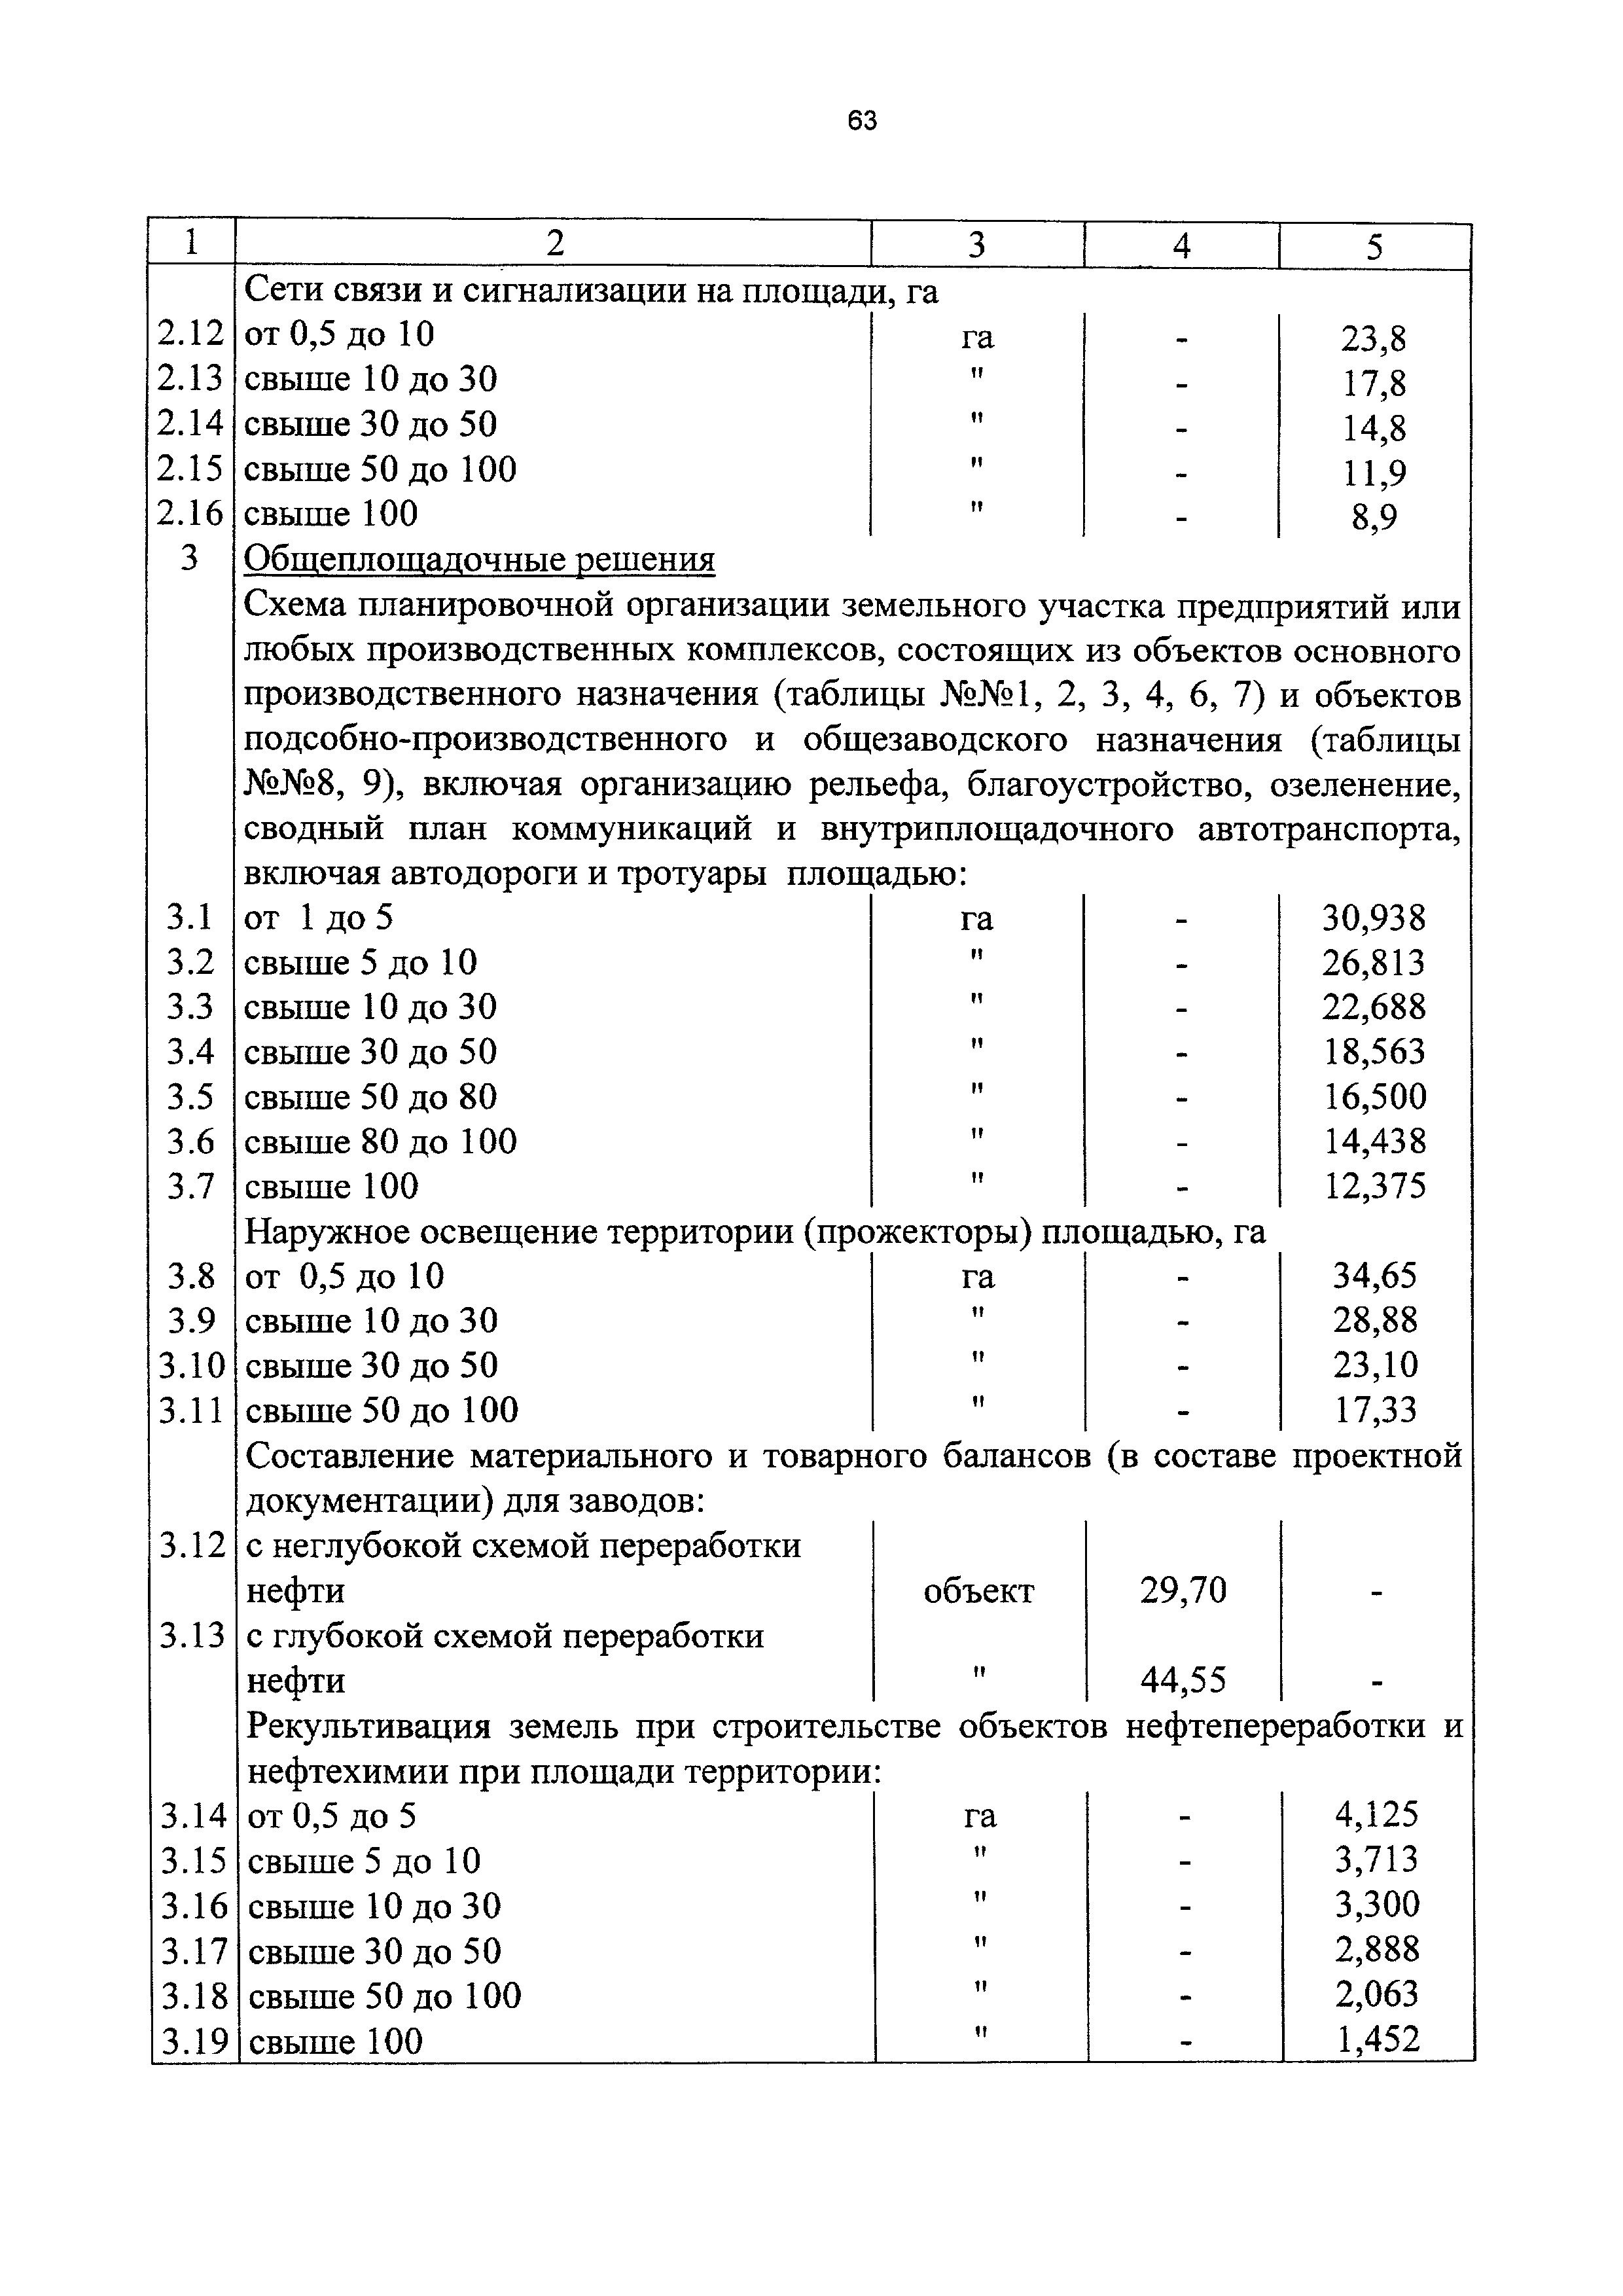 СБЦП 81-2001-13